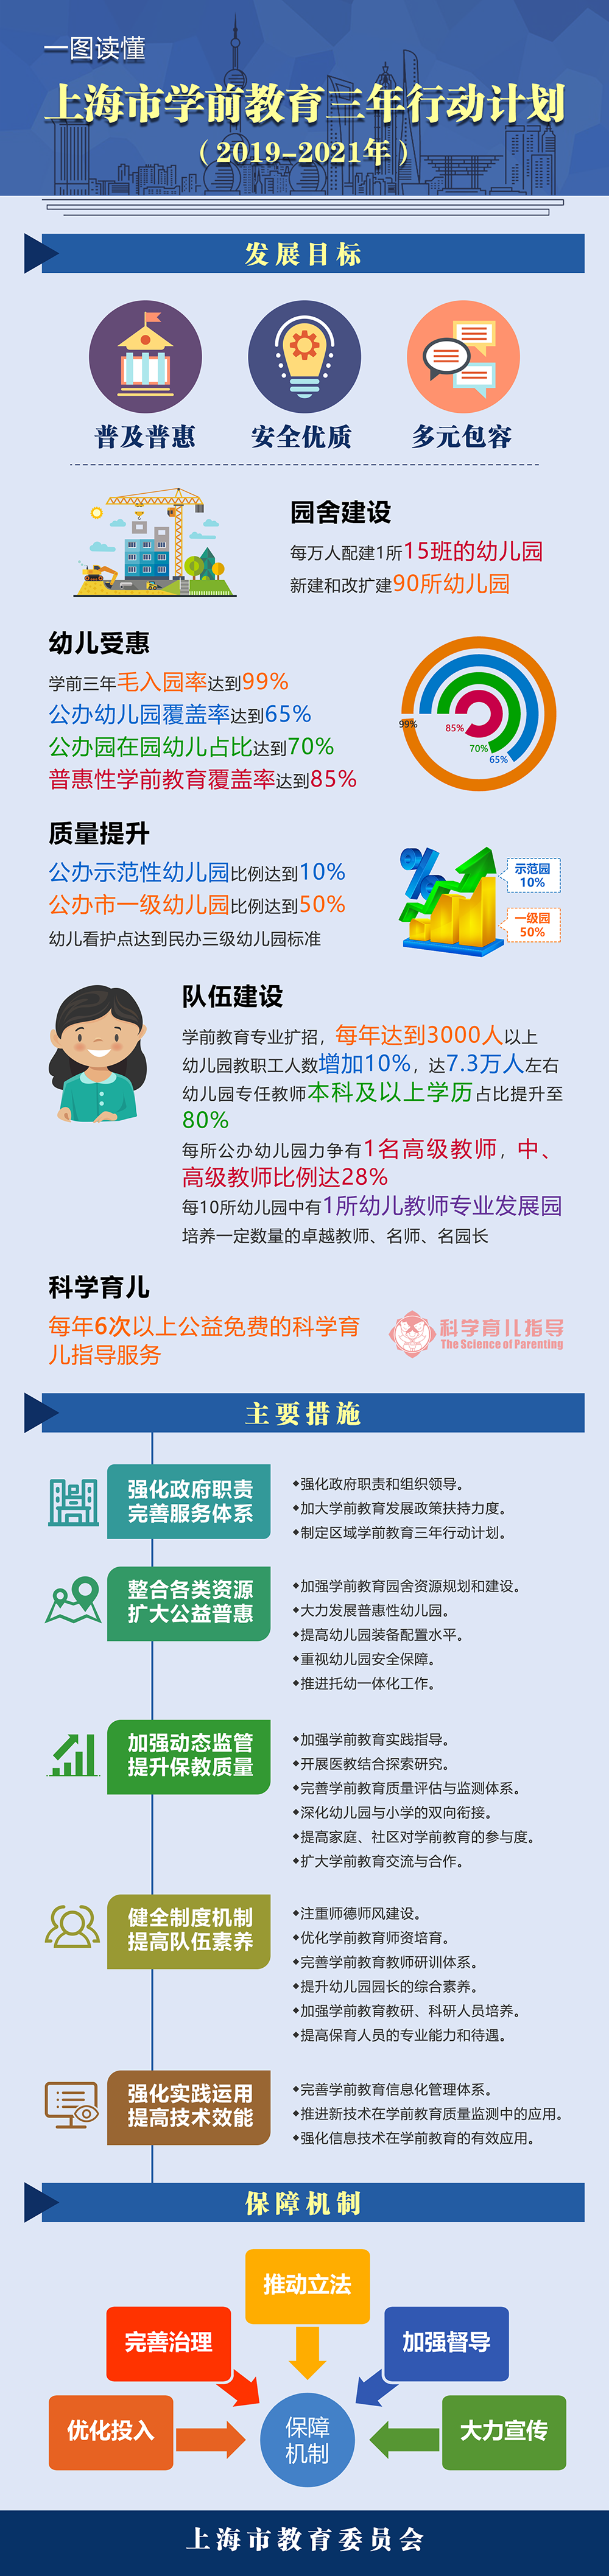 上海市学前教育三年行动计划